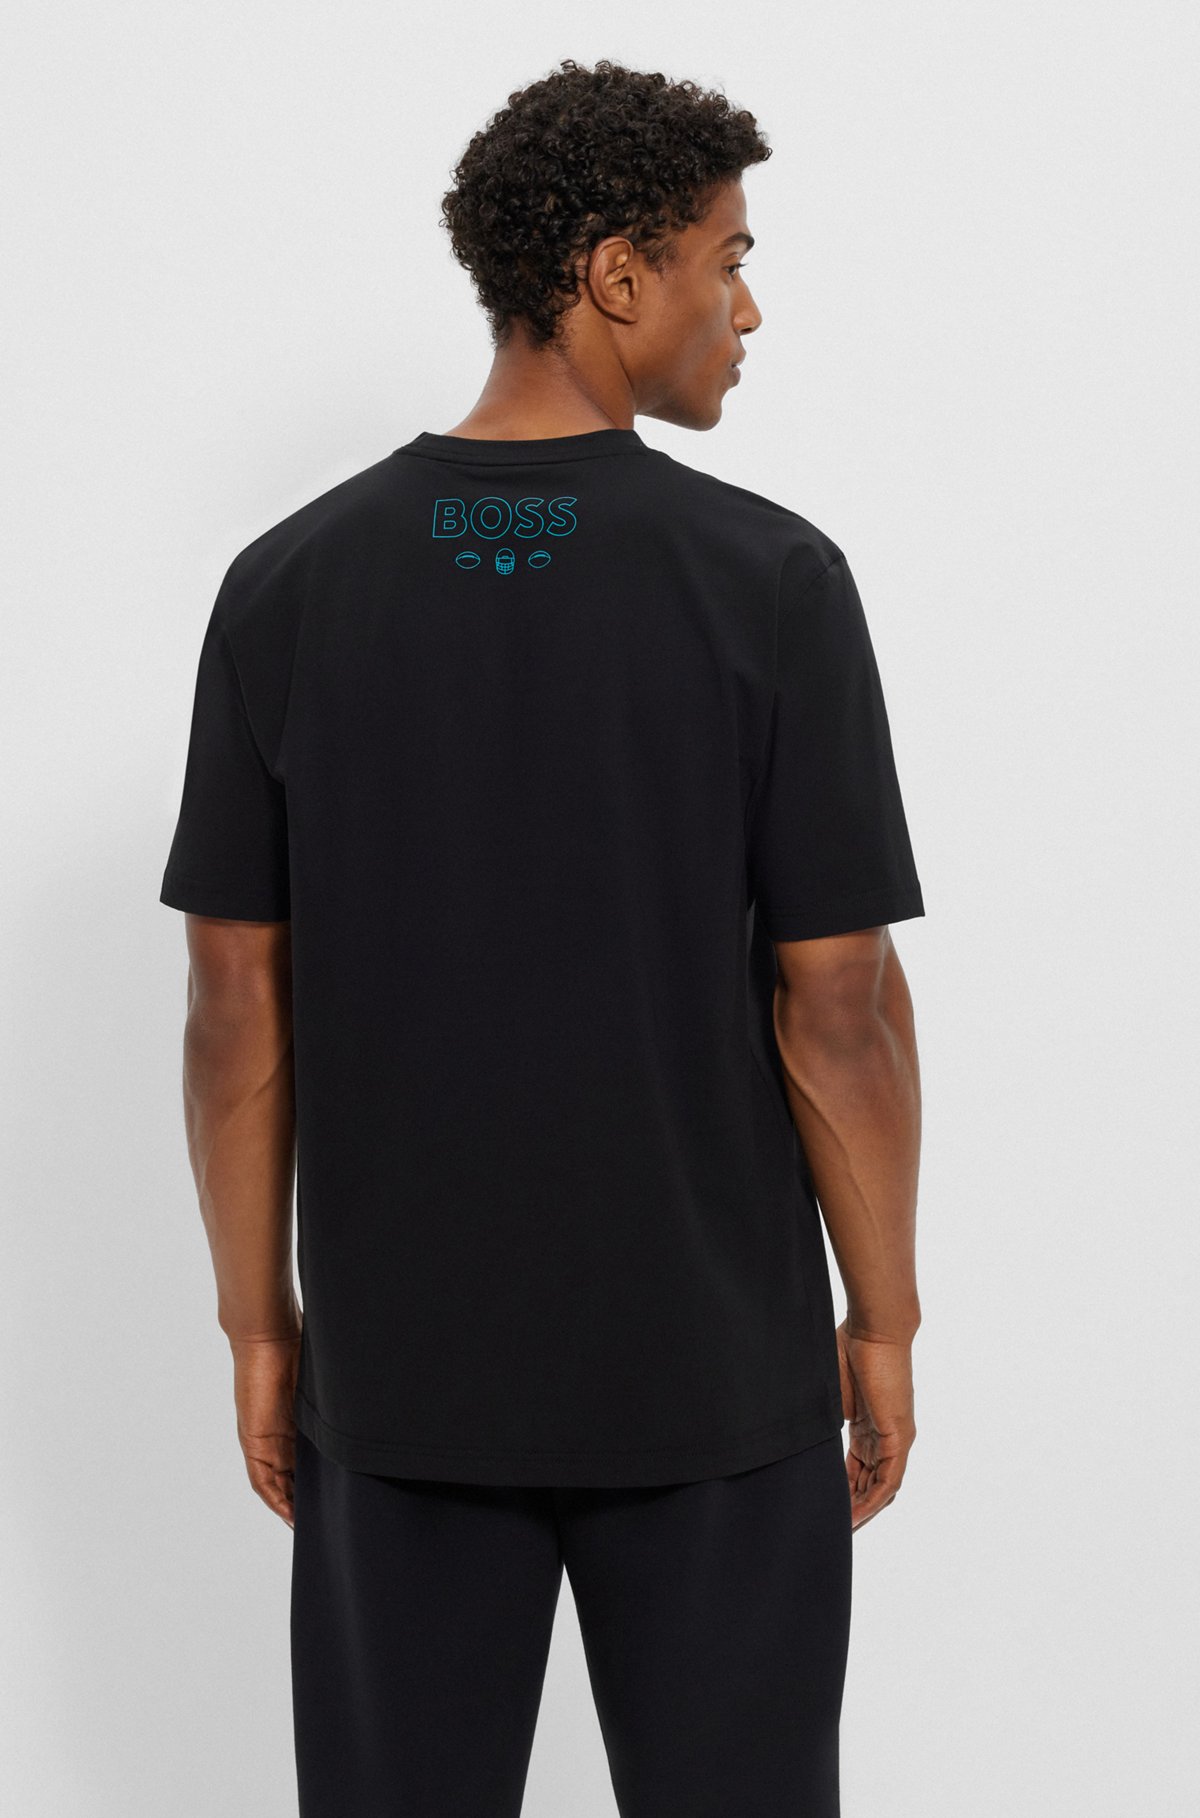  Camiseta de algodón elástico BOSS x NFL con detalle de la colaboración, Dolphins